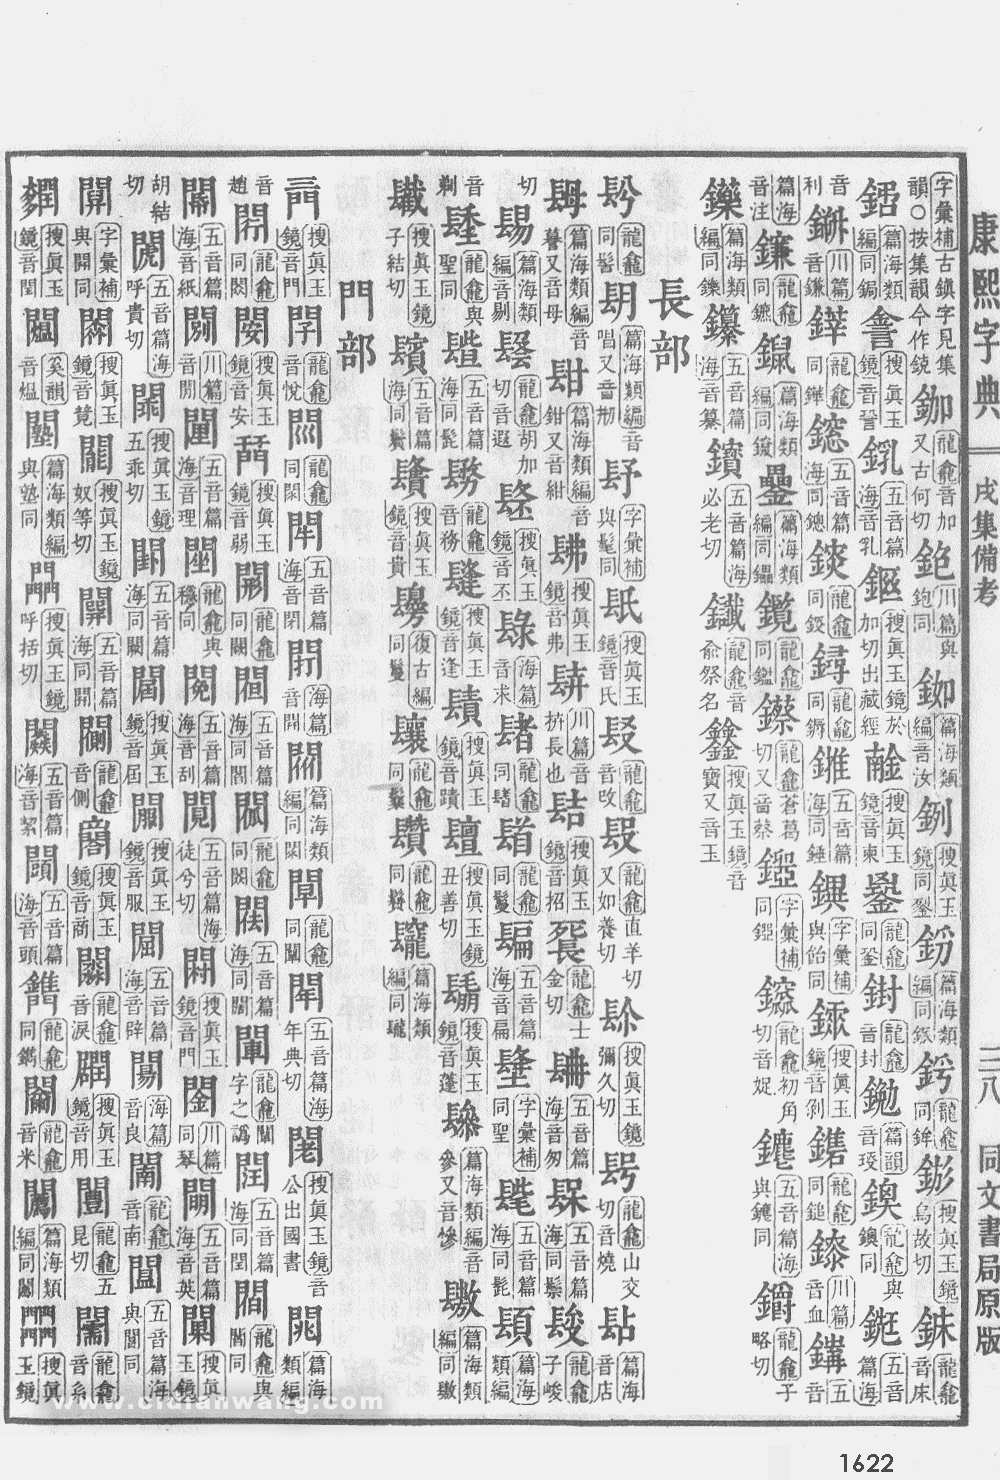 康熙字典掃描版第1622頁